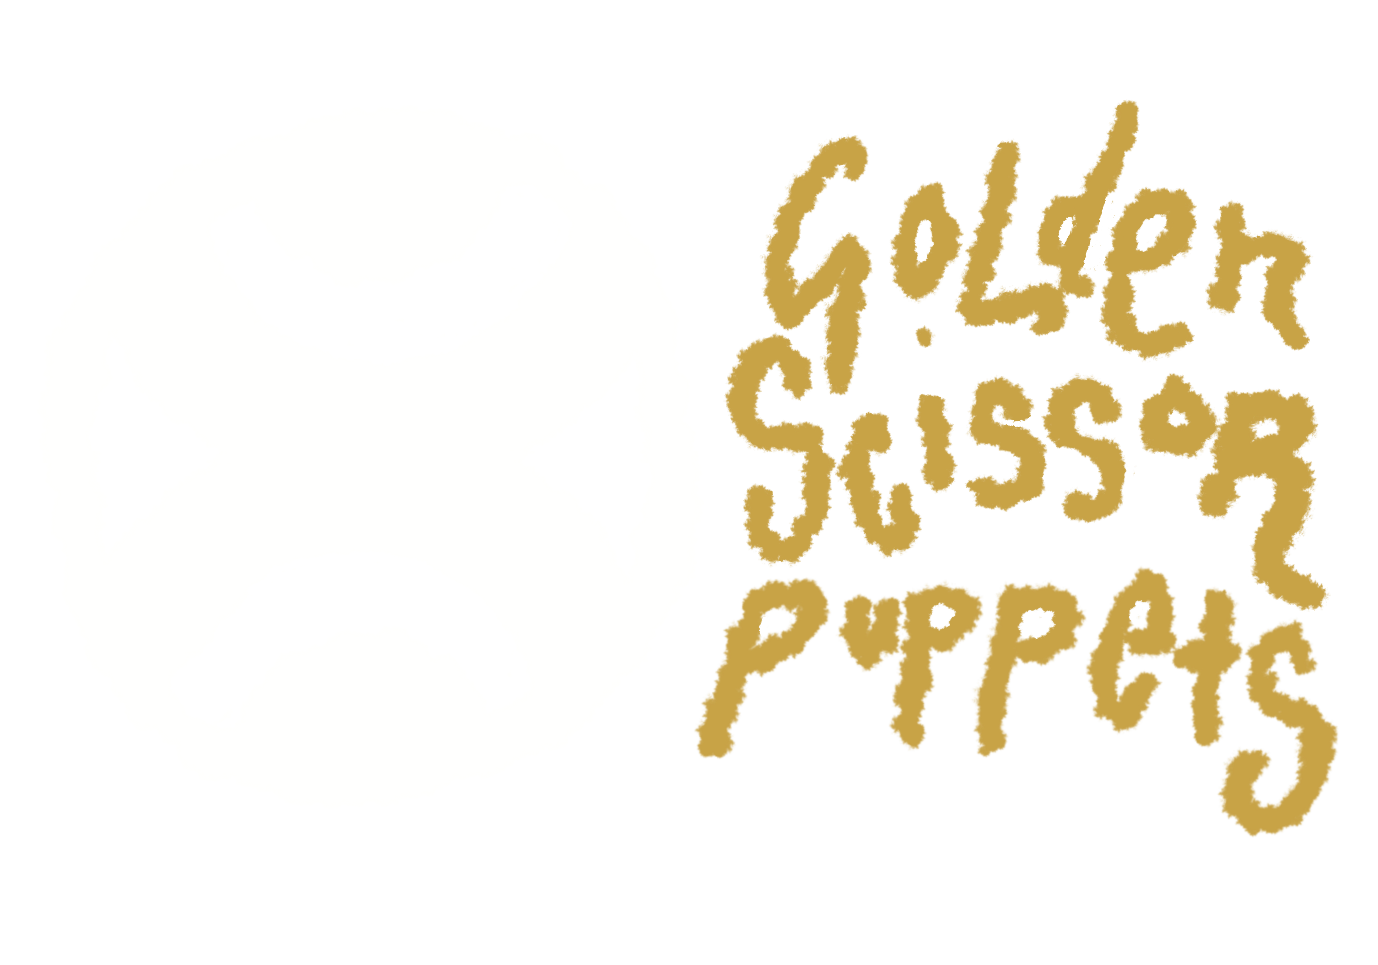 GOLDEN SCISSOR PUPPETS